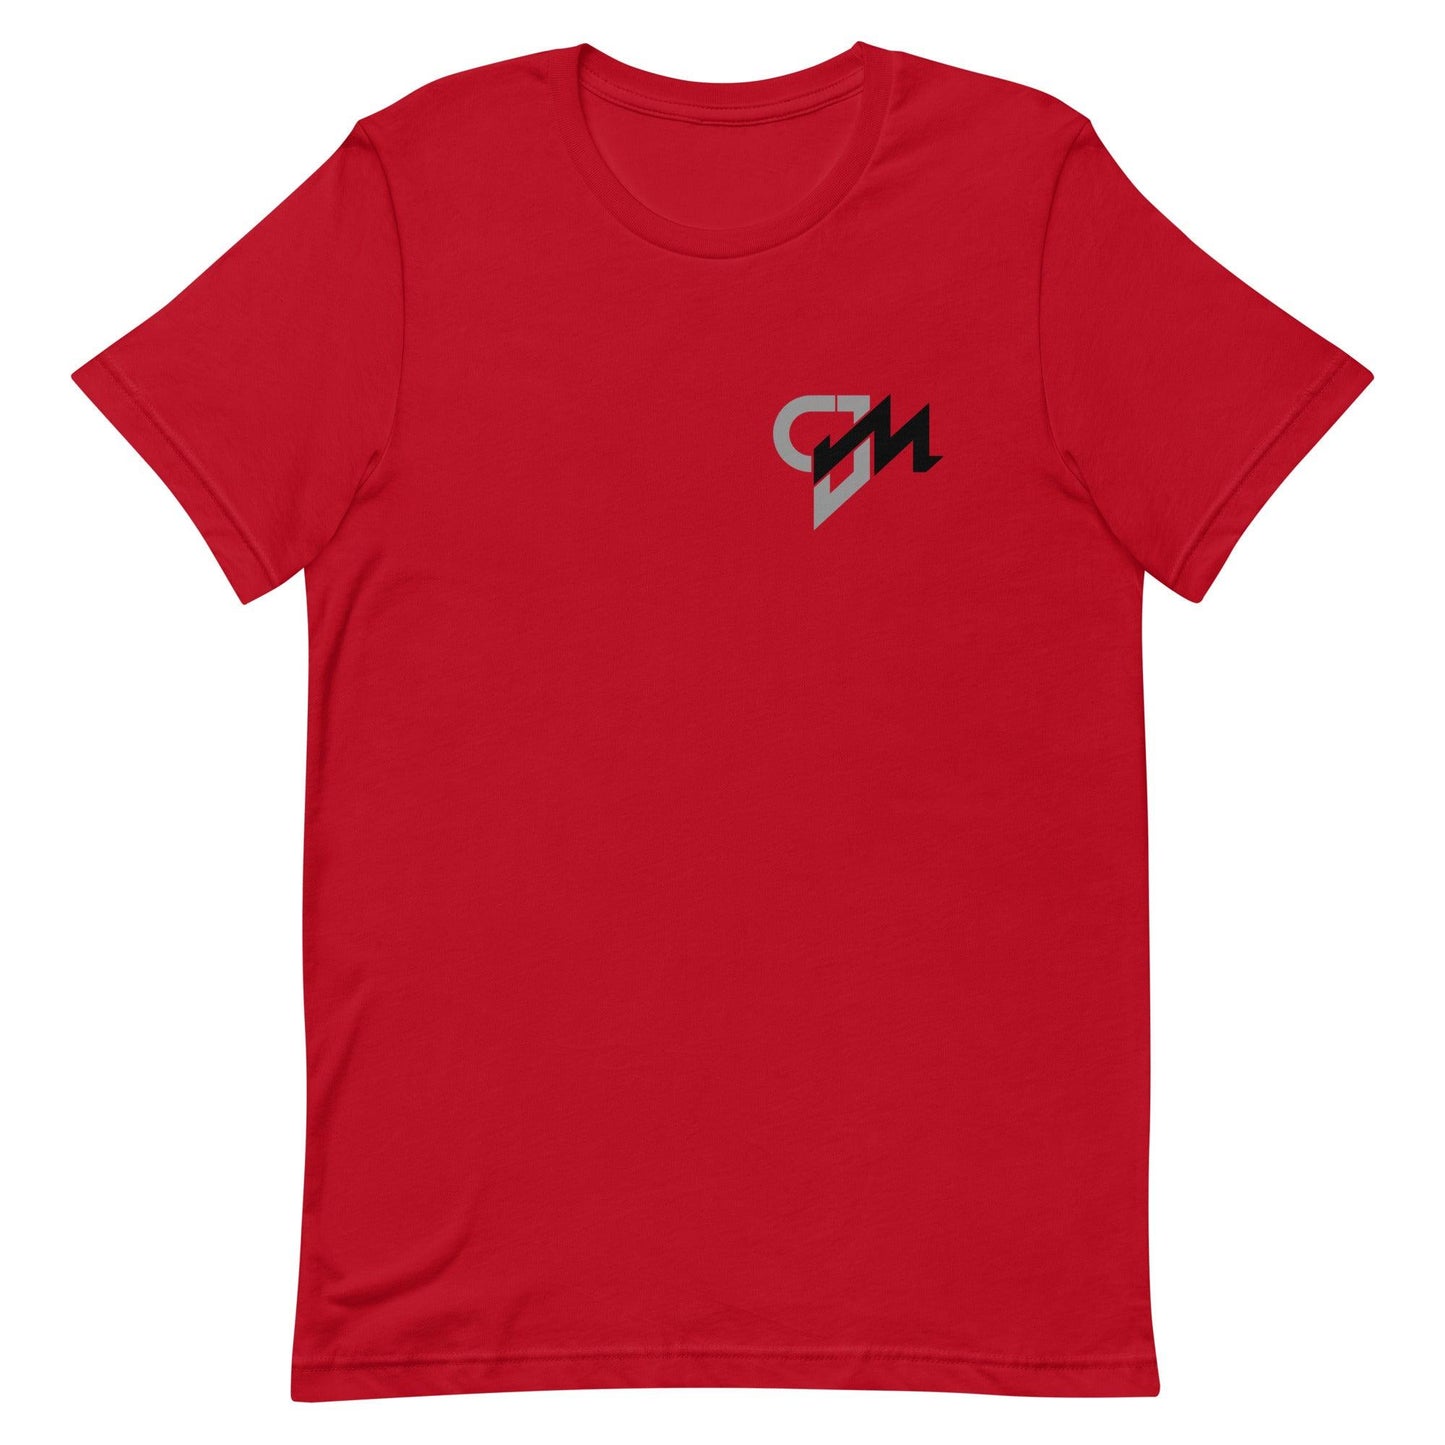 CJ Marable "Essential" t-shirt - Fan Arch